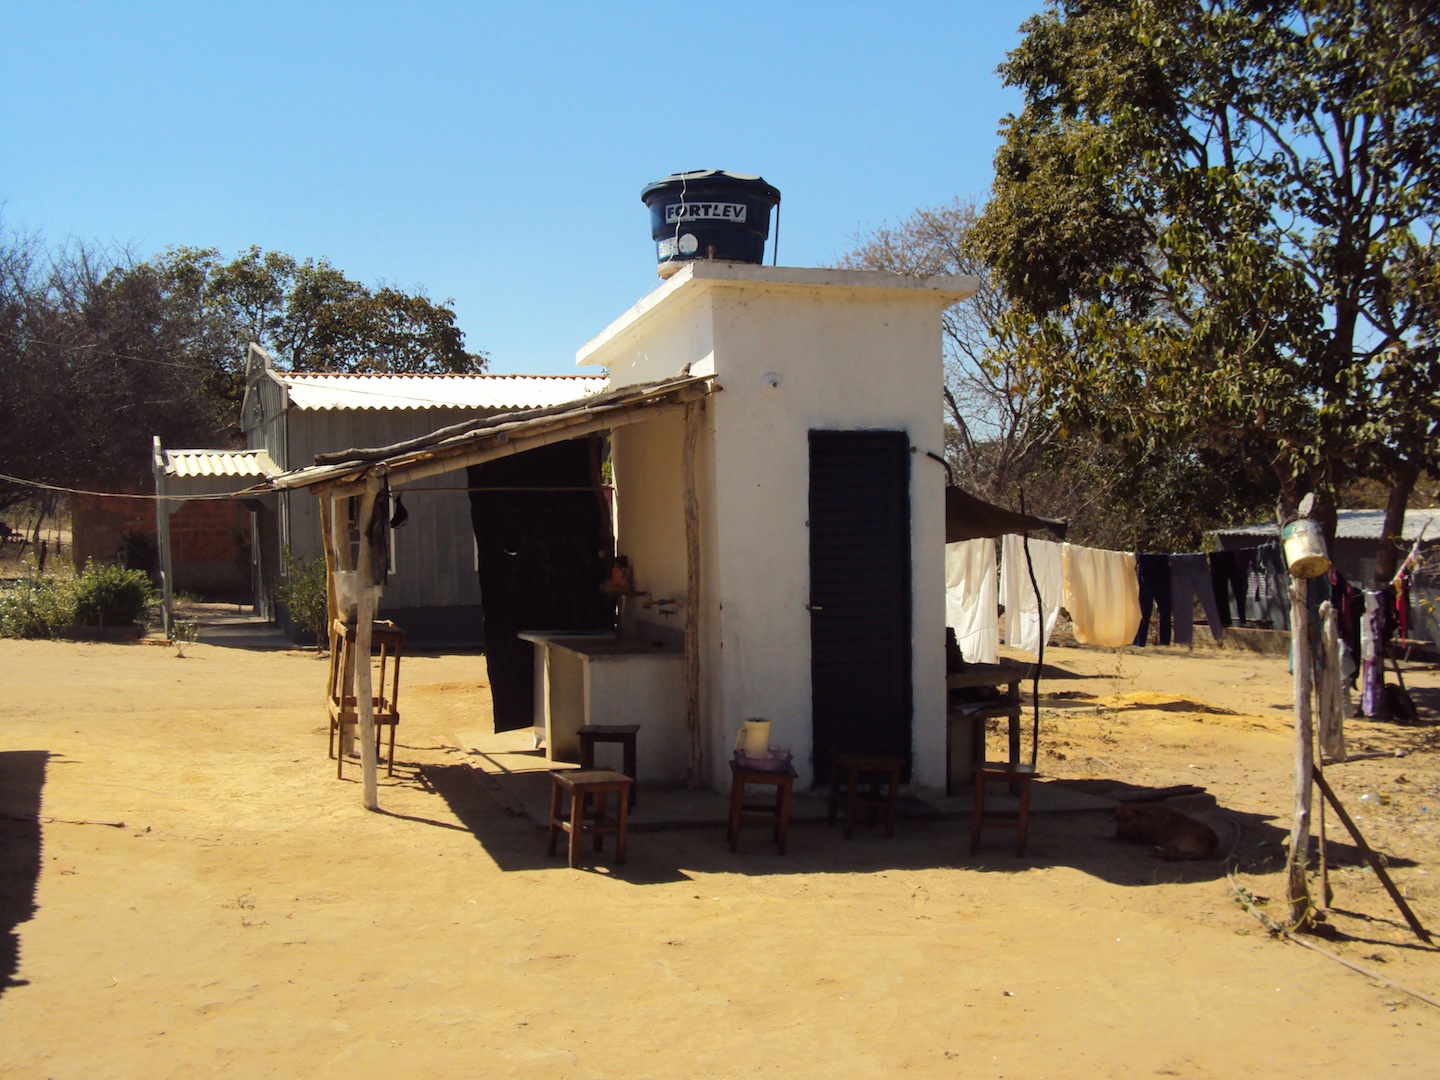 Tanque de agua construída por FUNASA, comunidad de Lagedo, São Francisco, MG